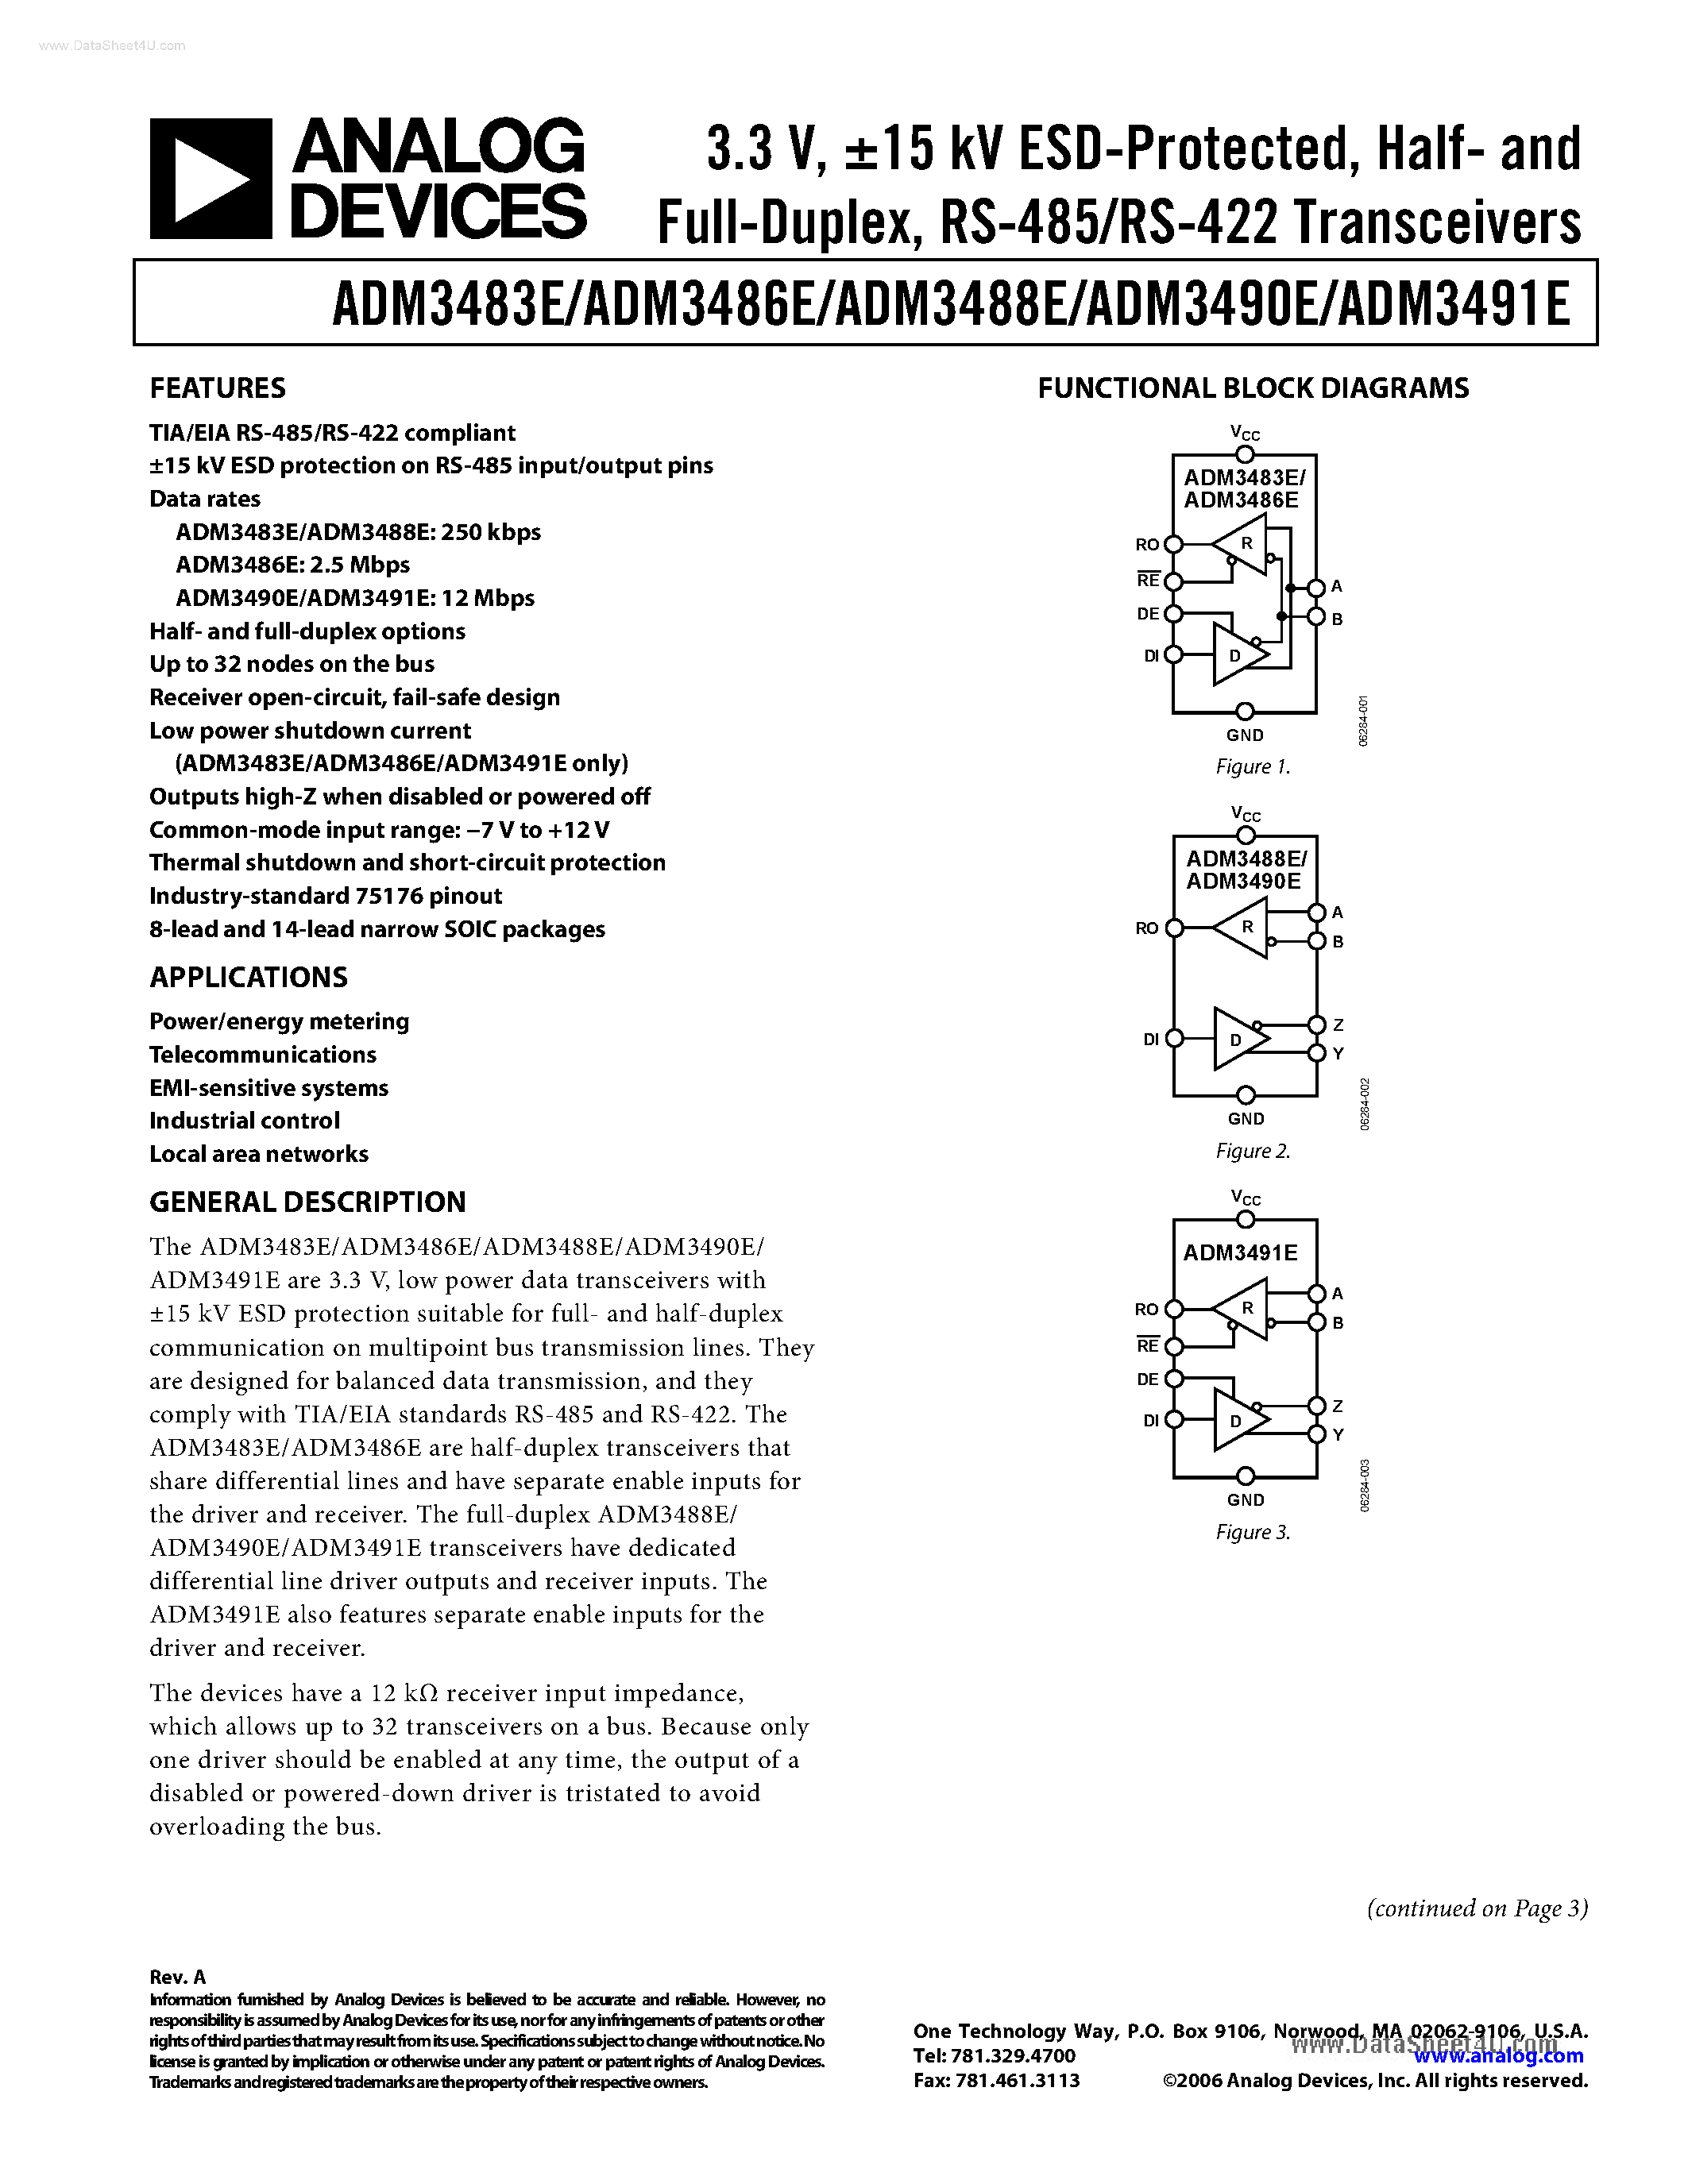 Даташит ADM3483E - (ADM3483E - ADM3491E) low power data transceivers страница 1